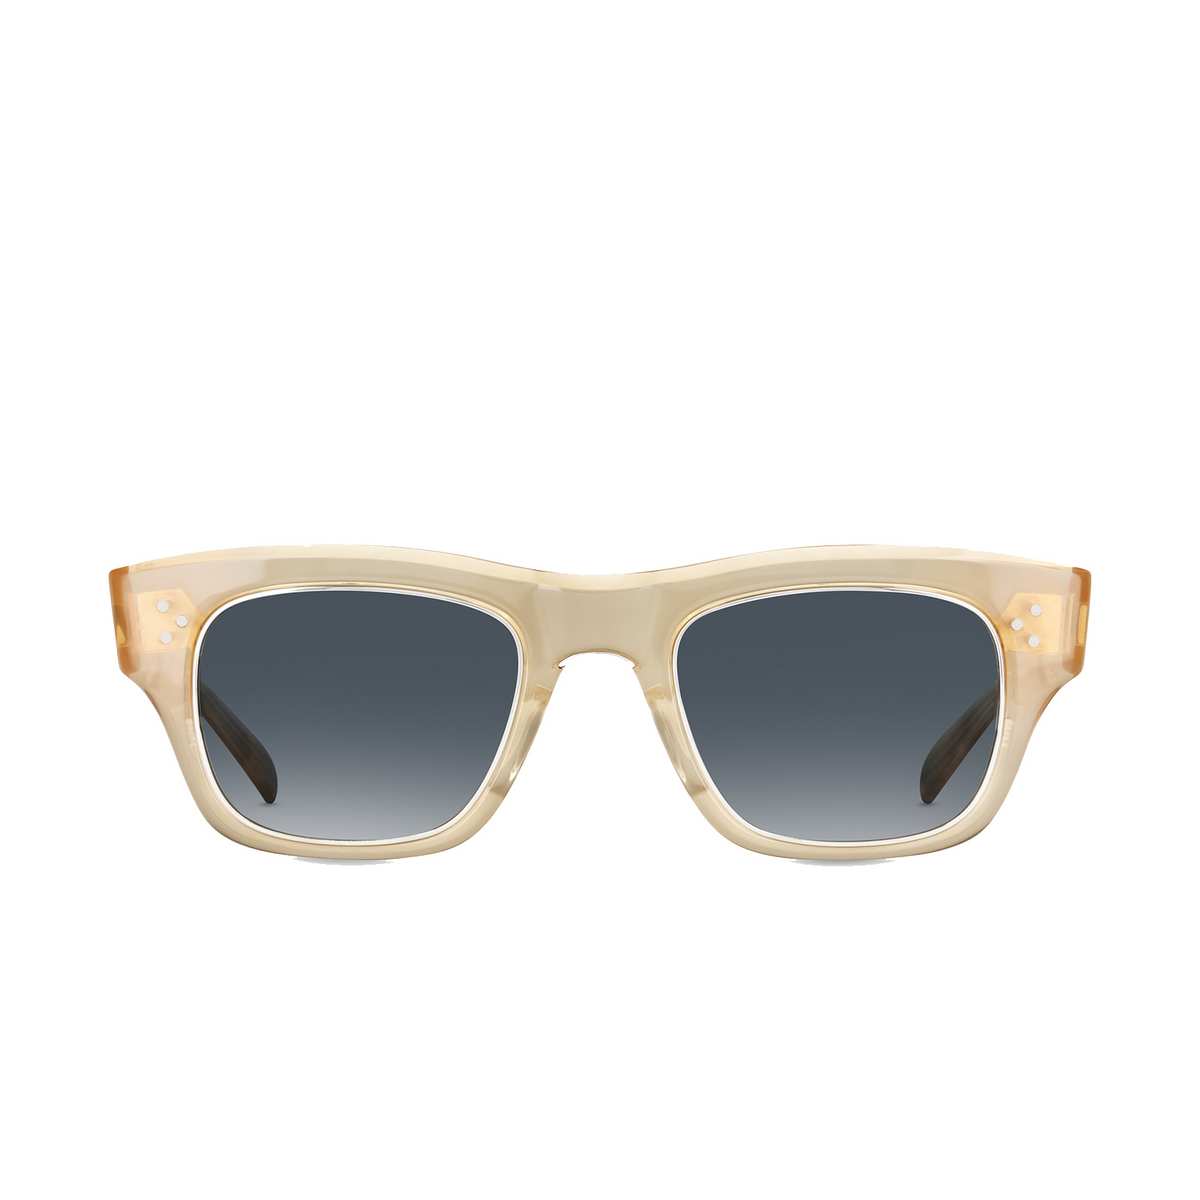 Mr. Leight GO S Sunglasses SMT-PLT/OCNGLSS - front view